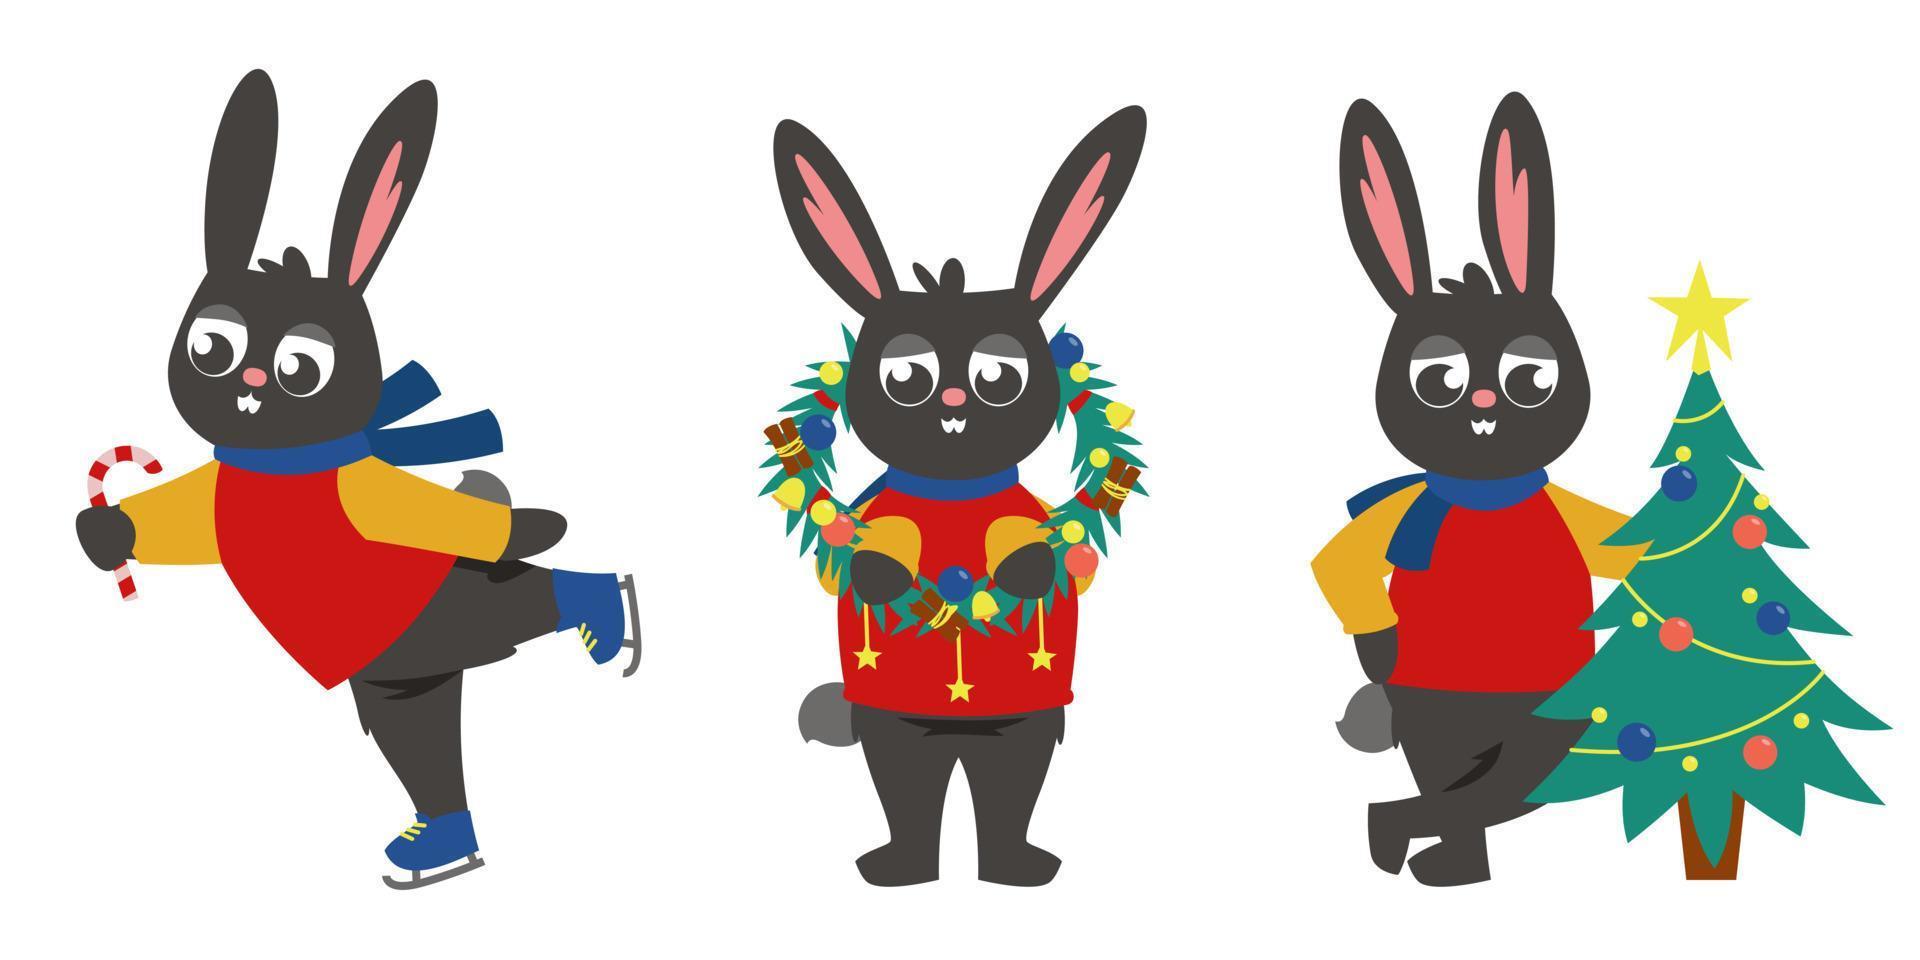 zwart konijn met kerstattributen. vector